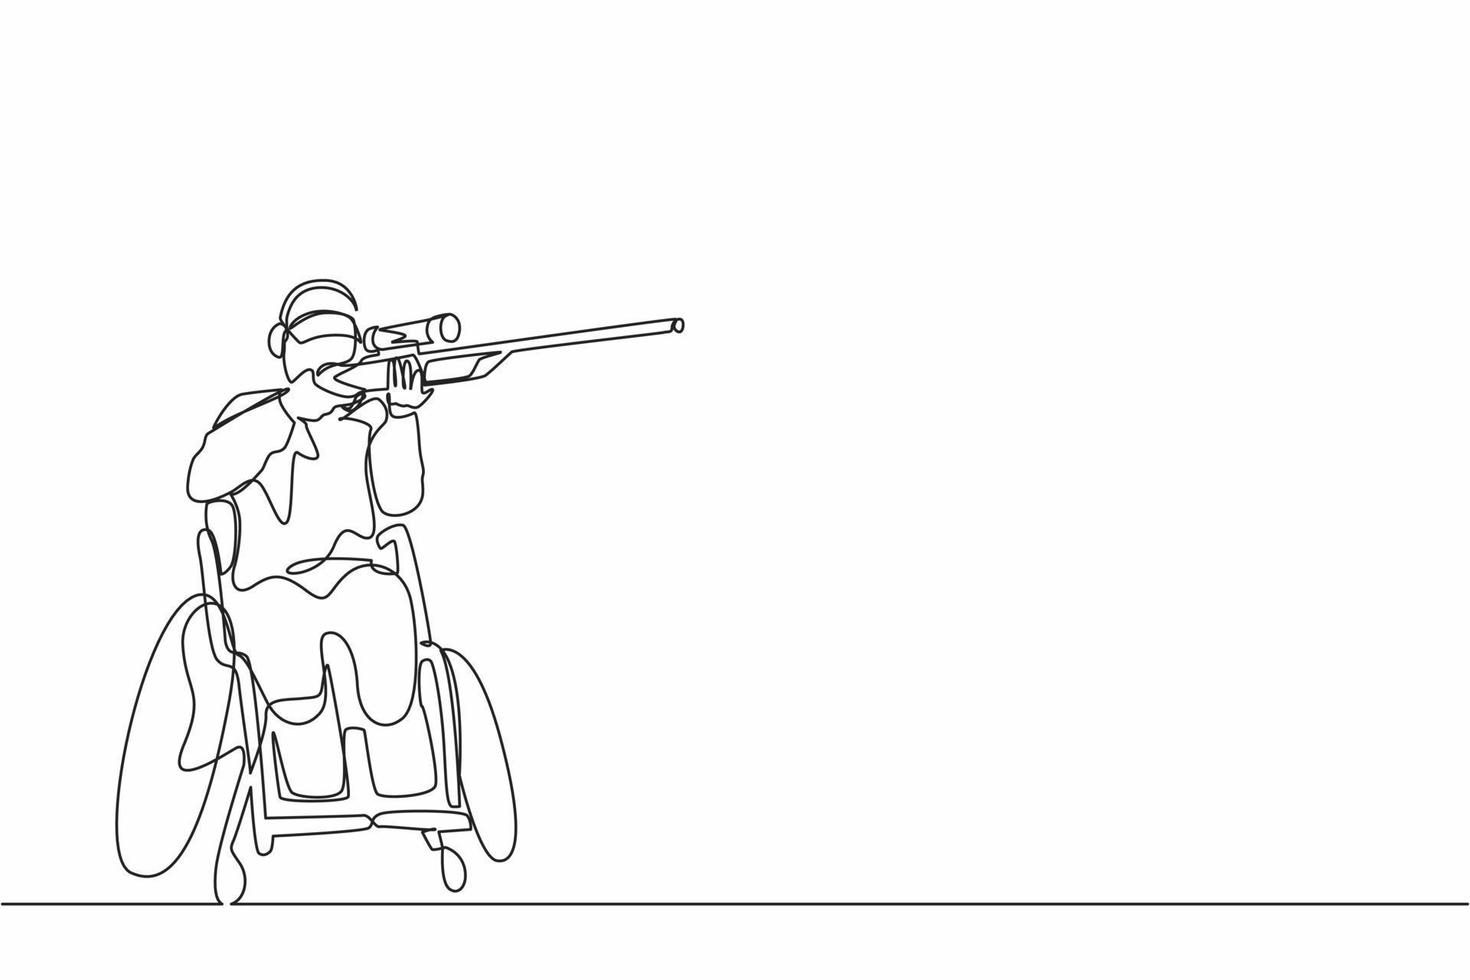 enda kontinuerlig linje ritning manlig idrottare på rullstol skytte sport konkurrens med hagelgevär. hobbyer och intressen för personer med funktionsnedsättning. en rad rita design vektorillustration vektor